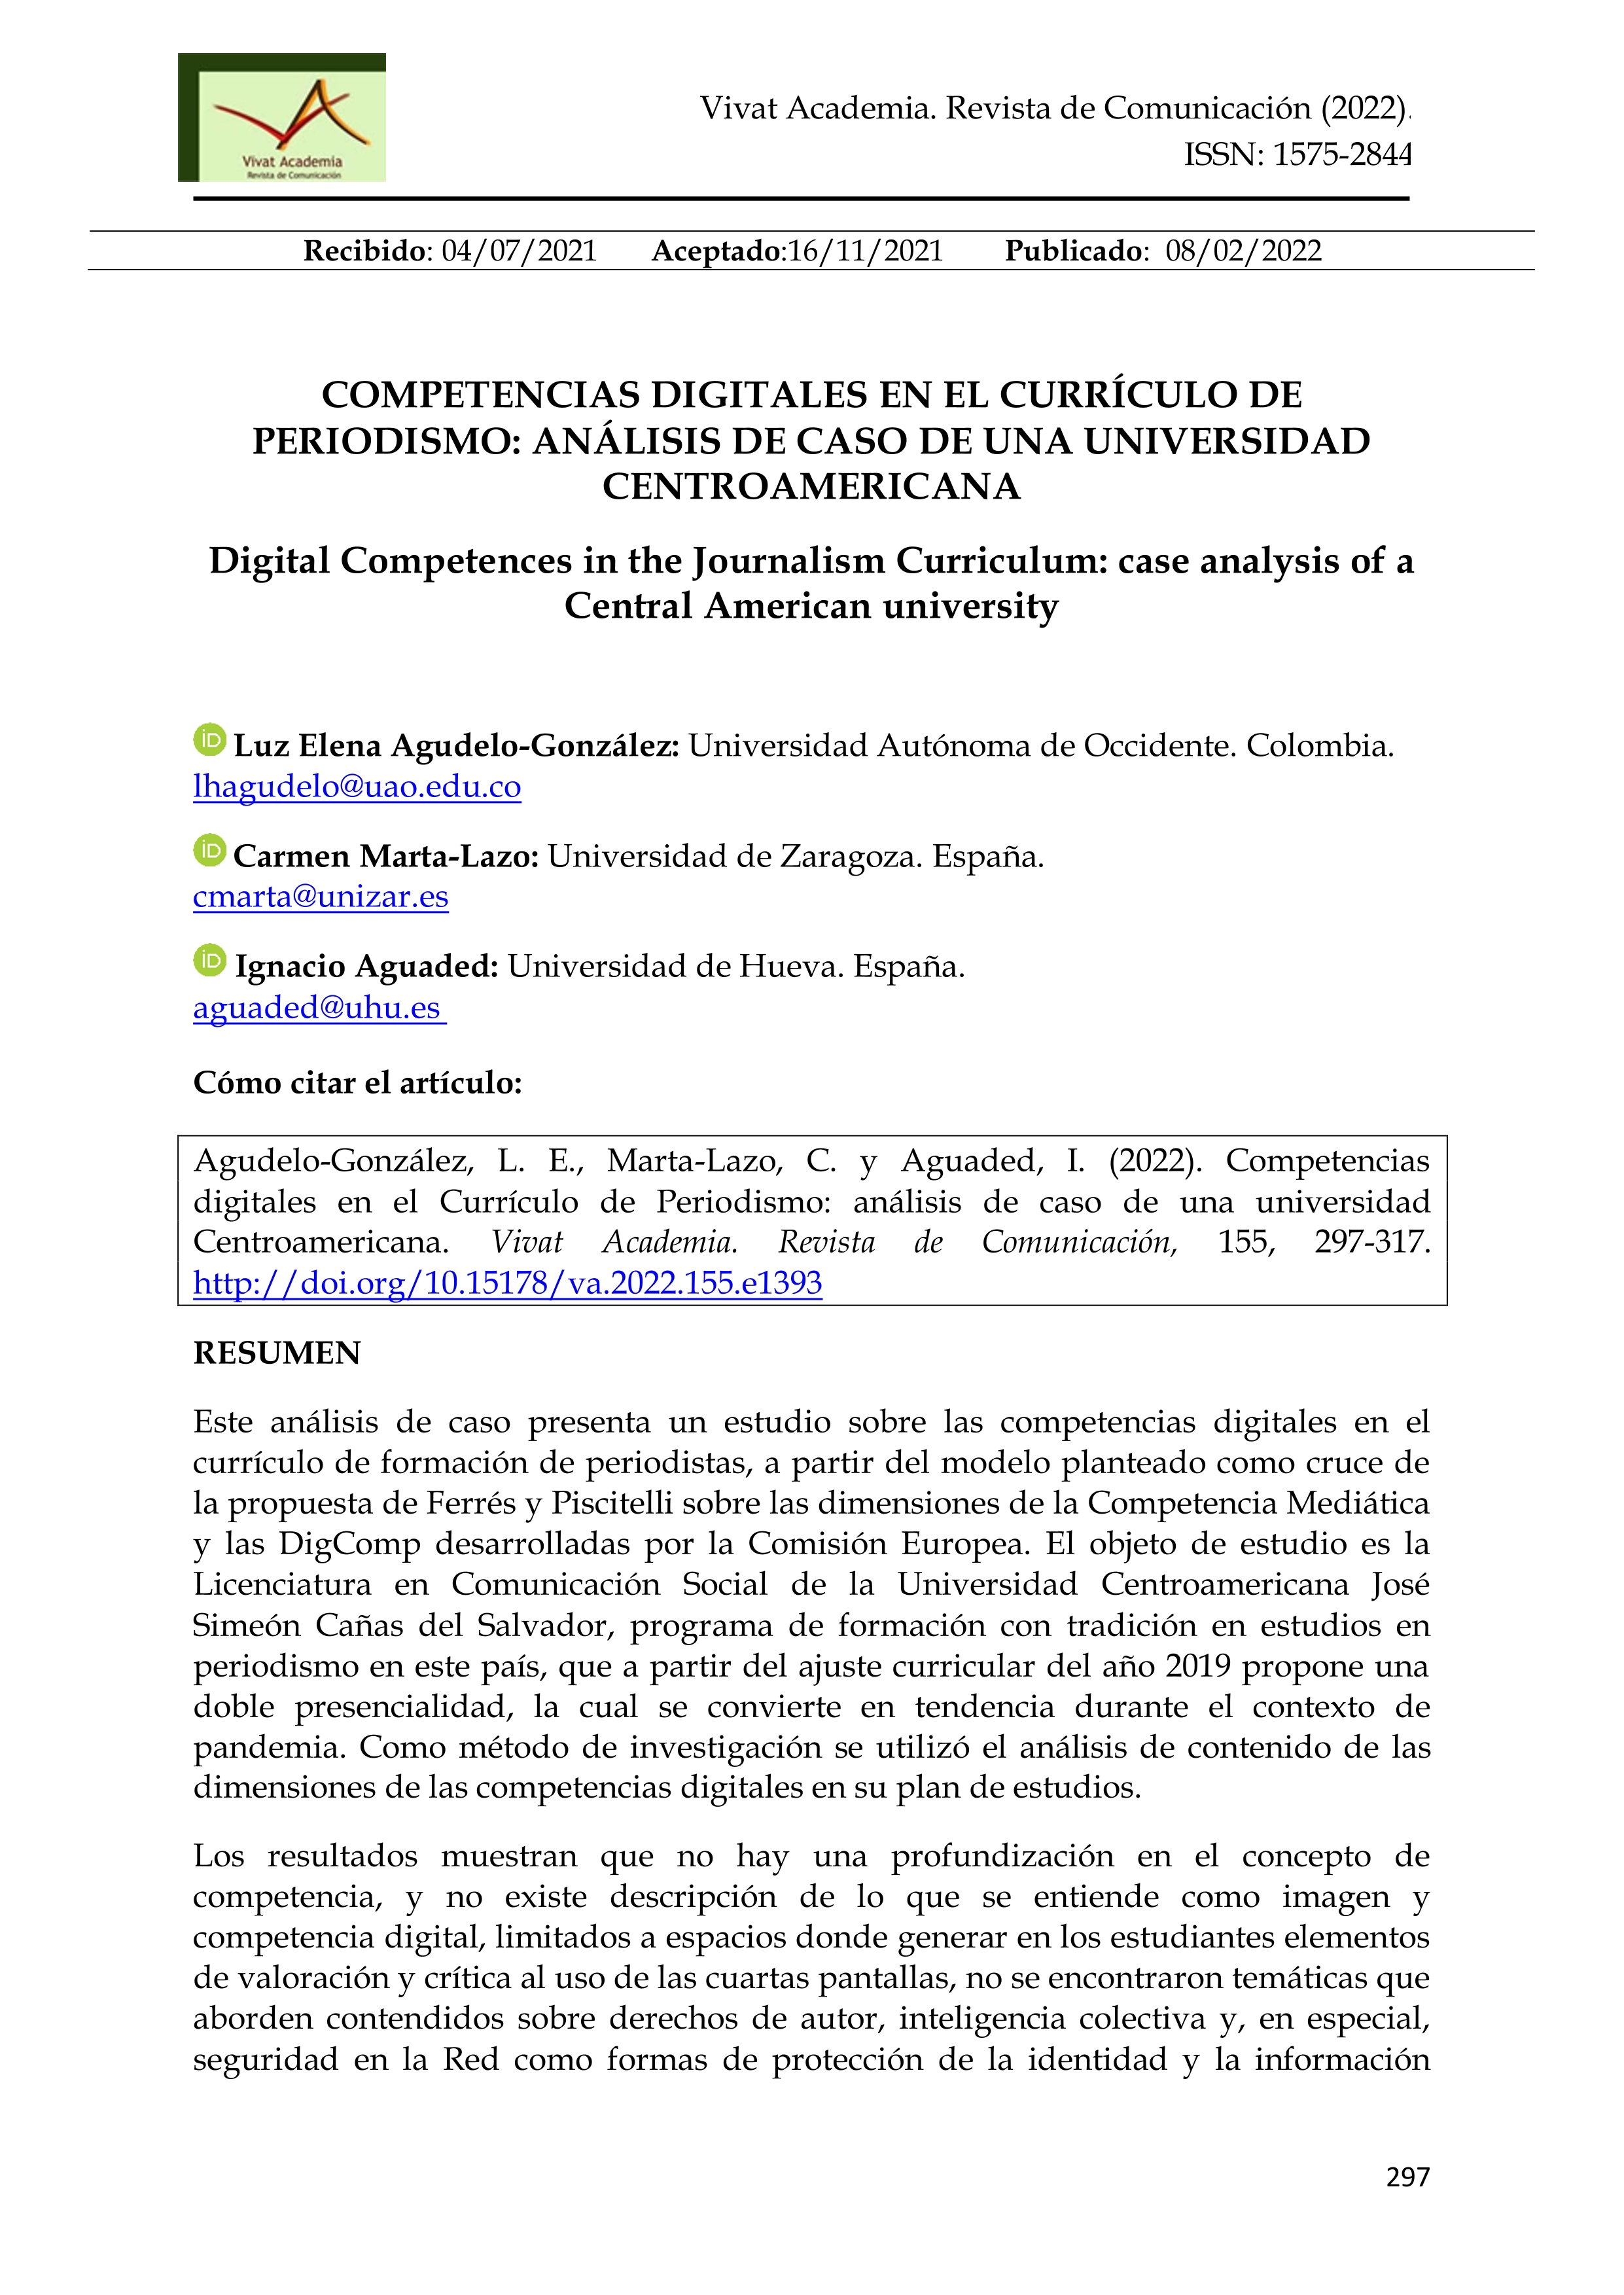 Competencias digitales en el Currículo de Periodismo: Análisis de caso de una universidad Centroamericana